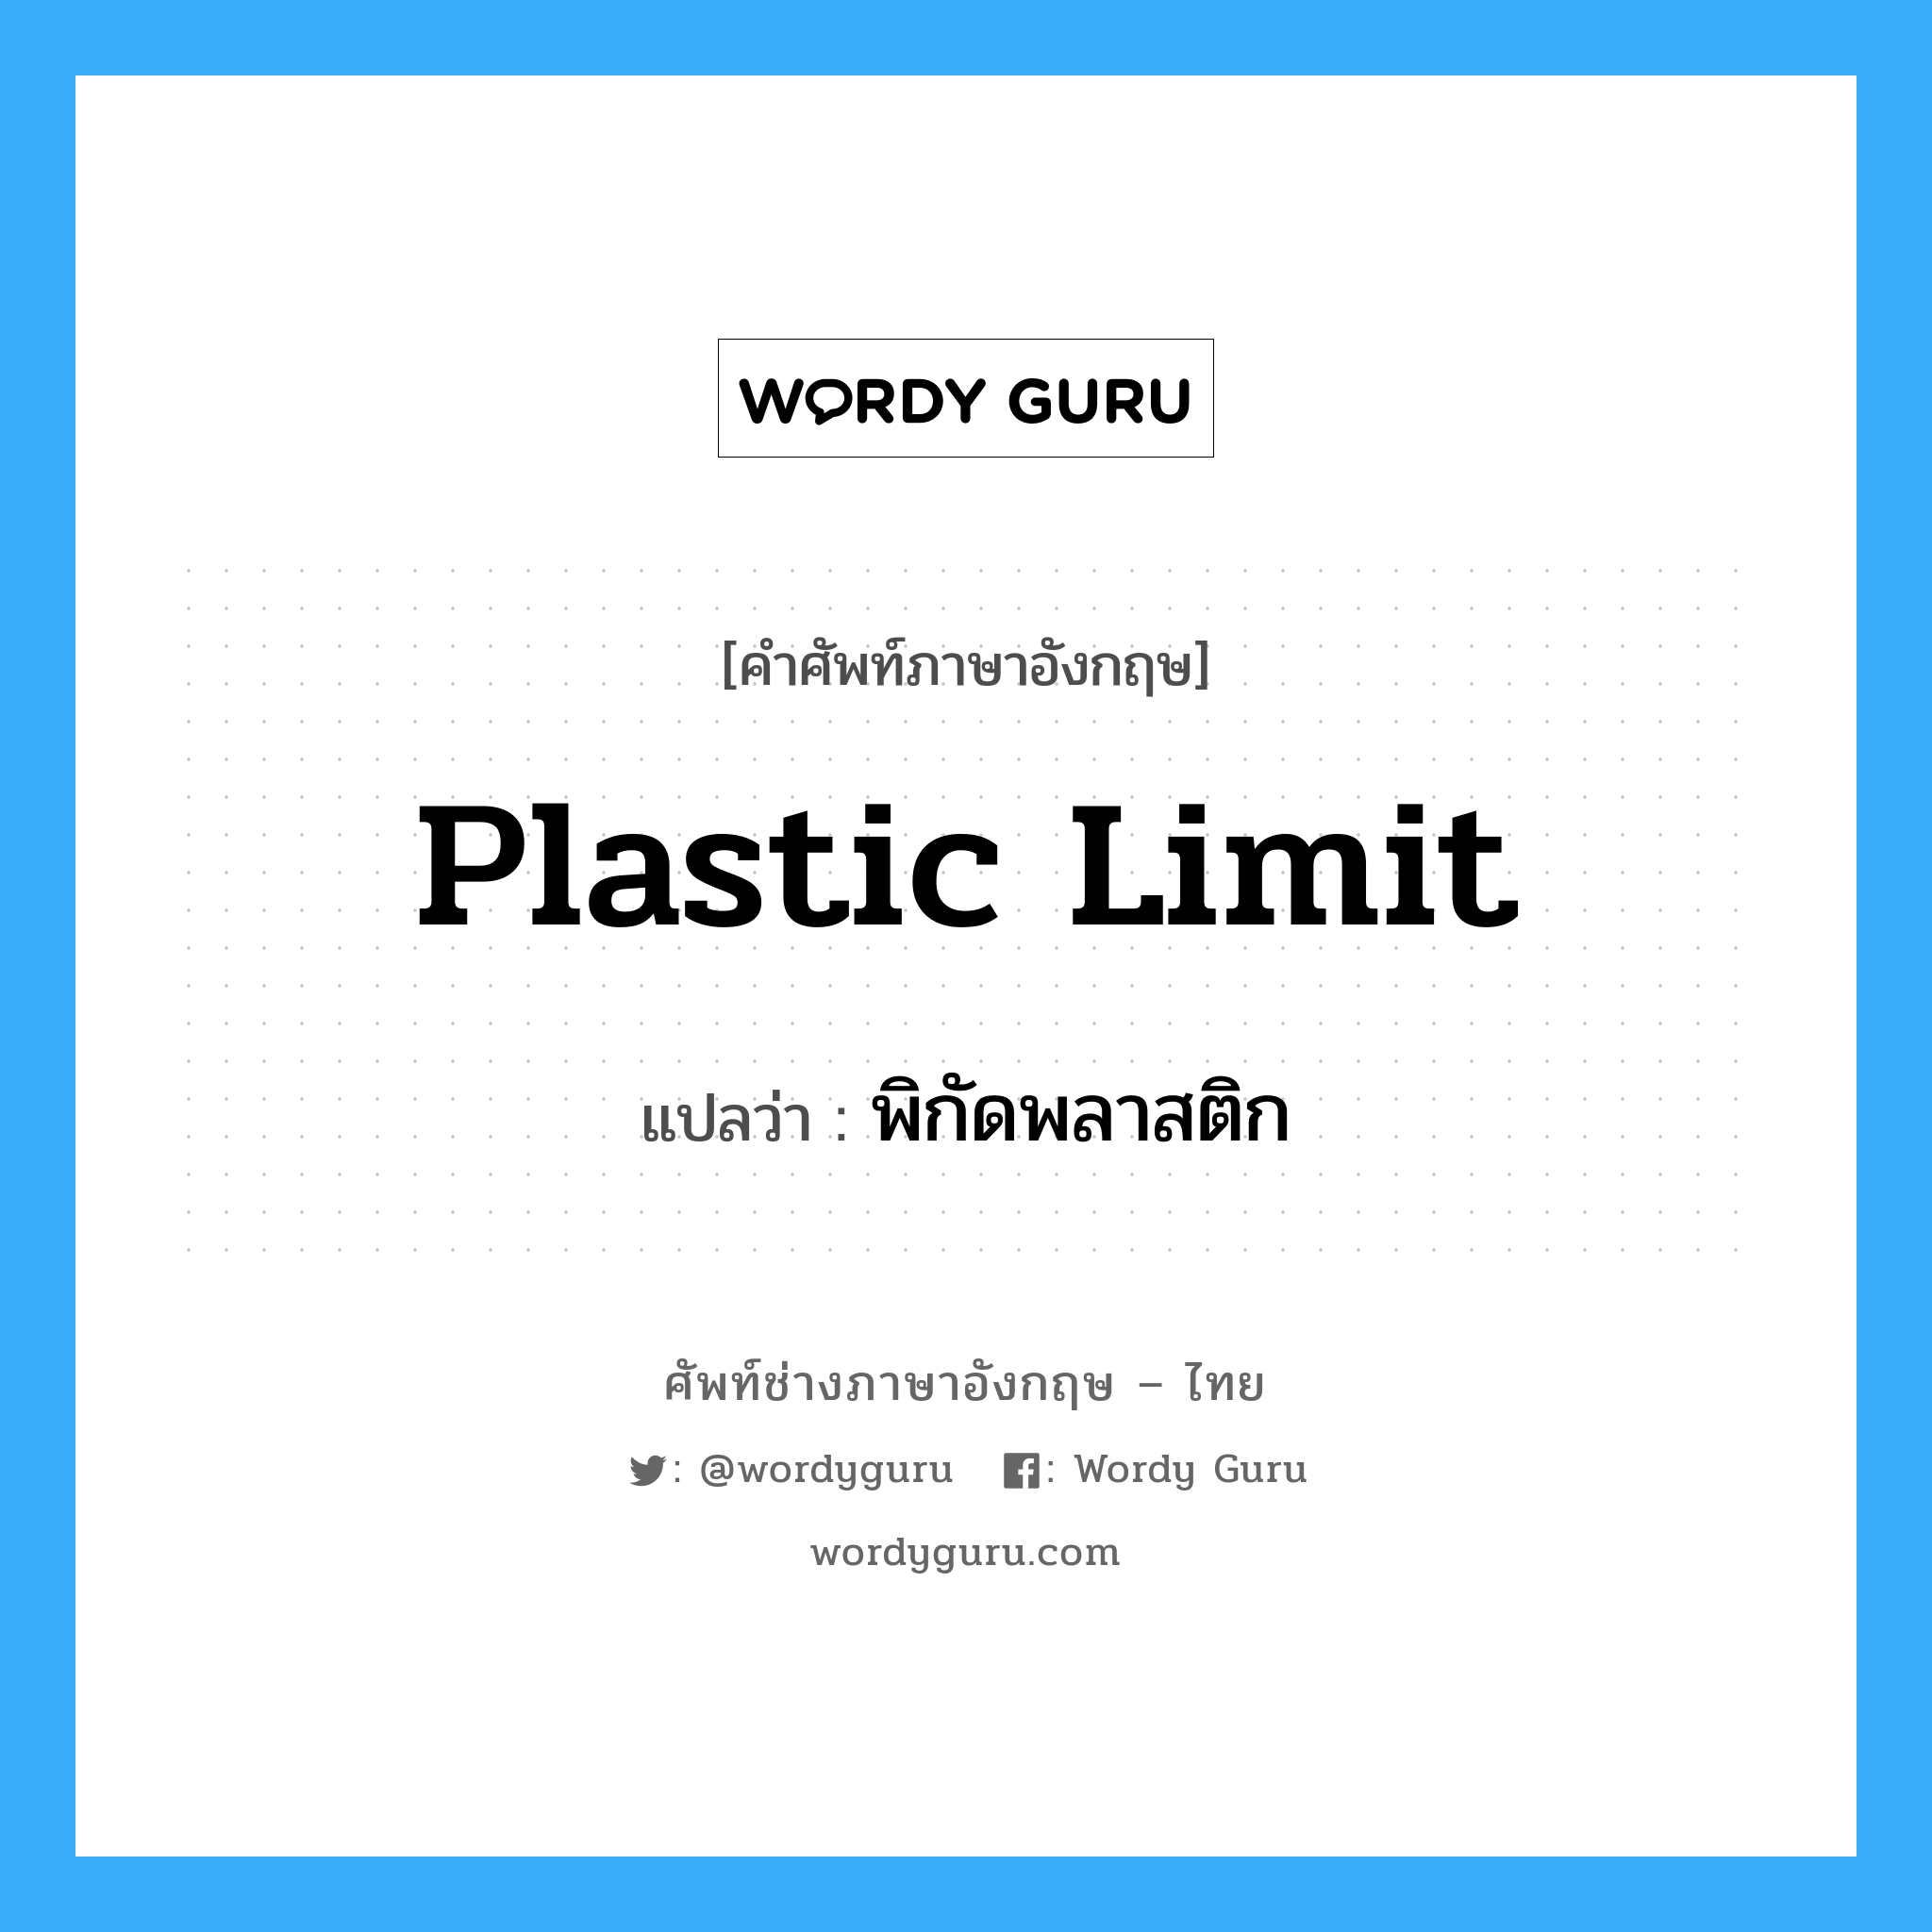 plastic limit แปลว่า?, คำศัพท์ช่างภาษาอังกฤษ - ไทย plastic limit คำศัพท์ภาษาอังกฤษ plastic limit แปลว่า พิกัดพลาสติก